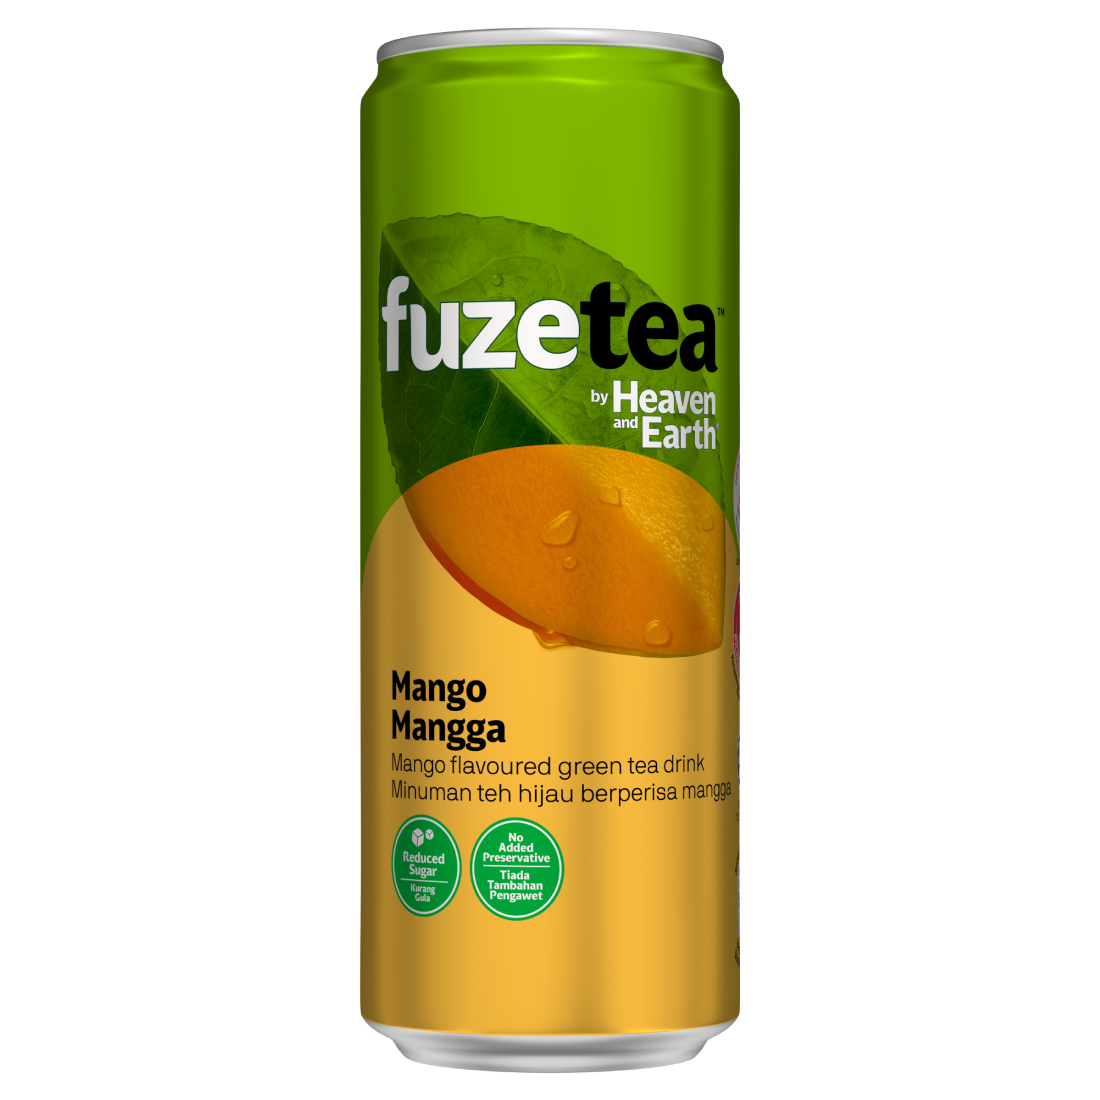 fuze tea mango green tea tin